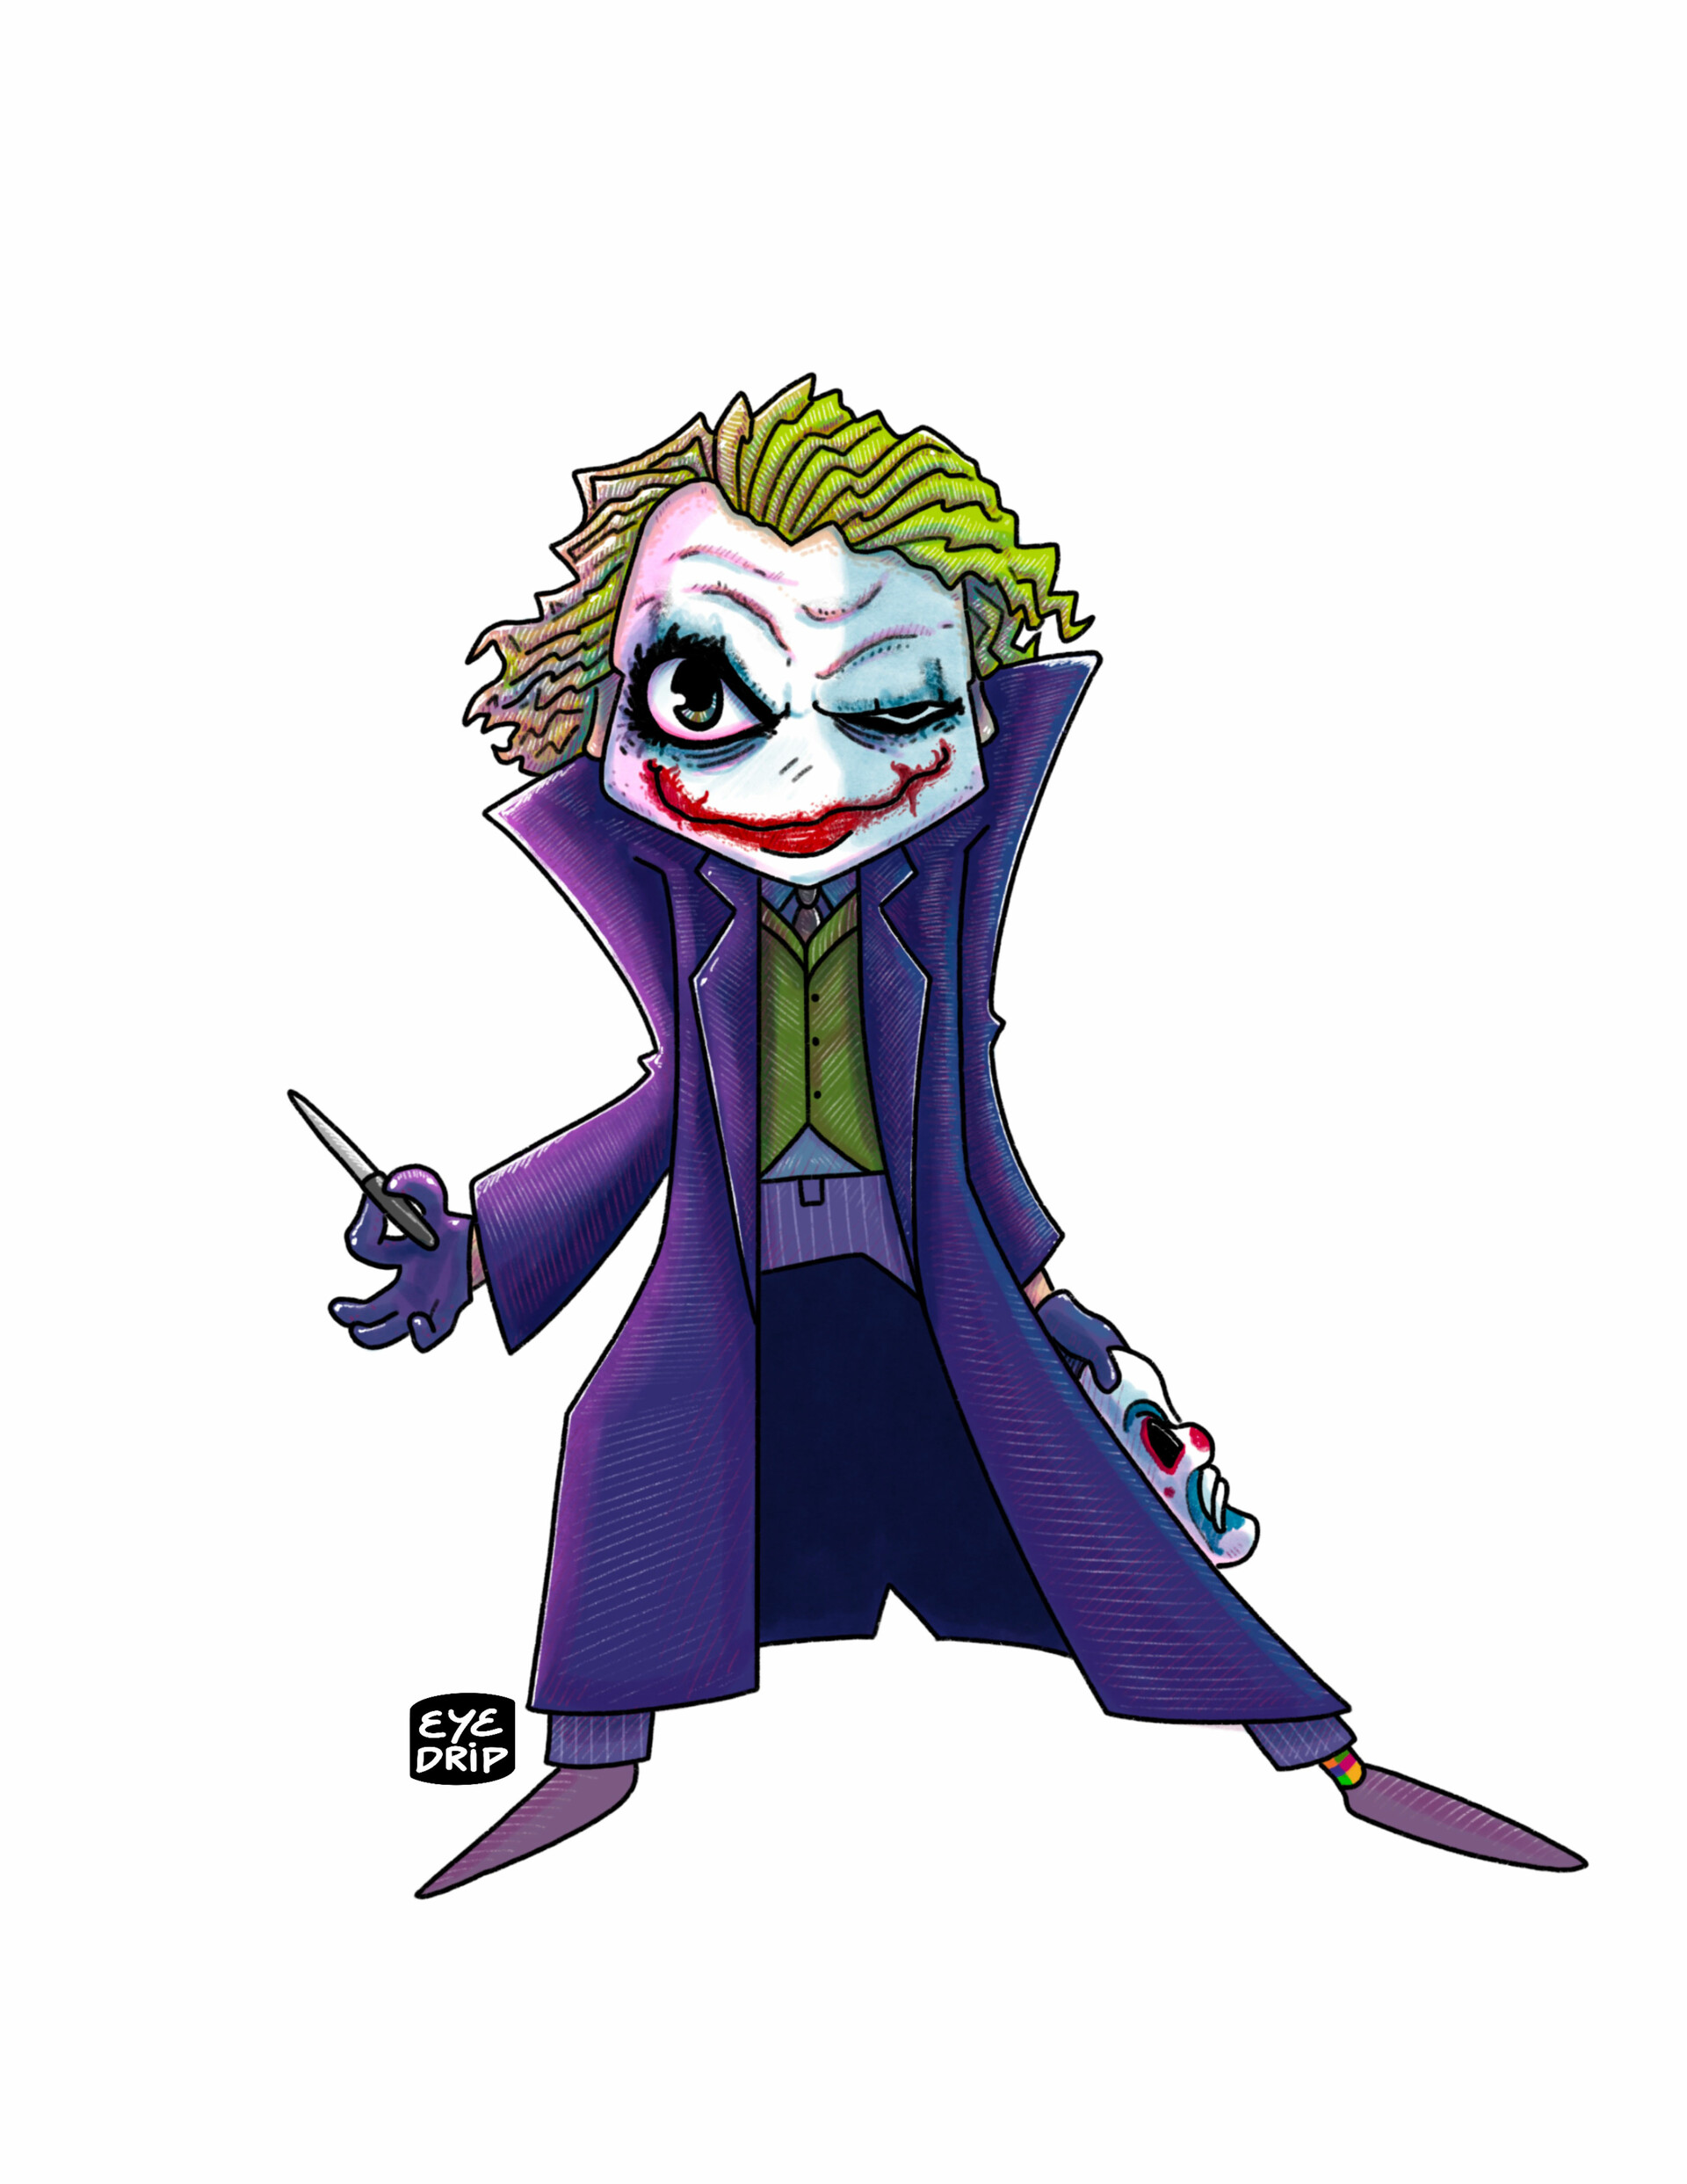 Heath ledger Joker Watercolor art by Kshitij on Dribbble